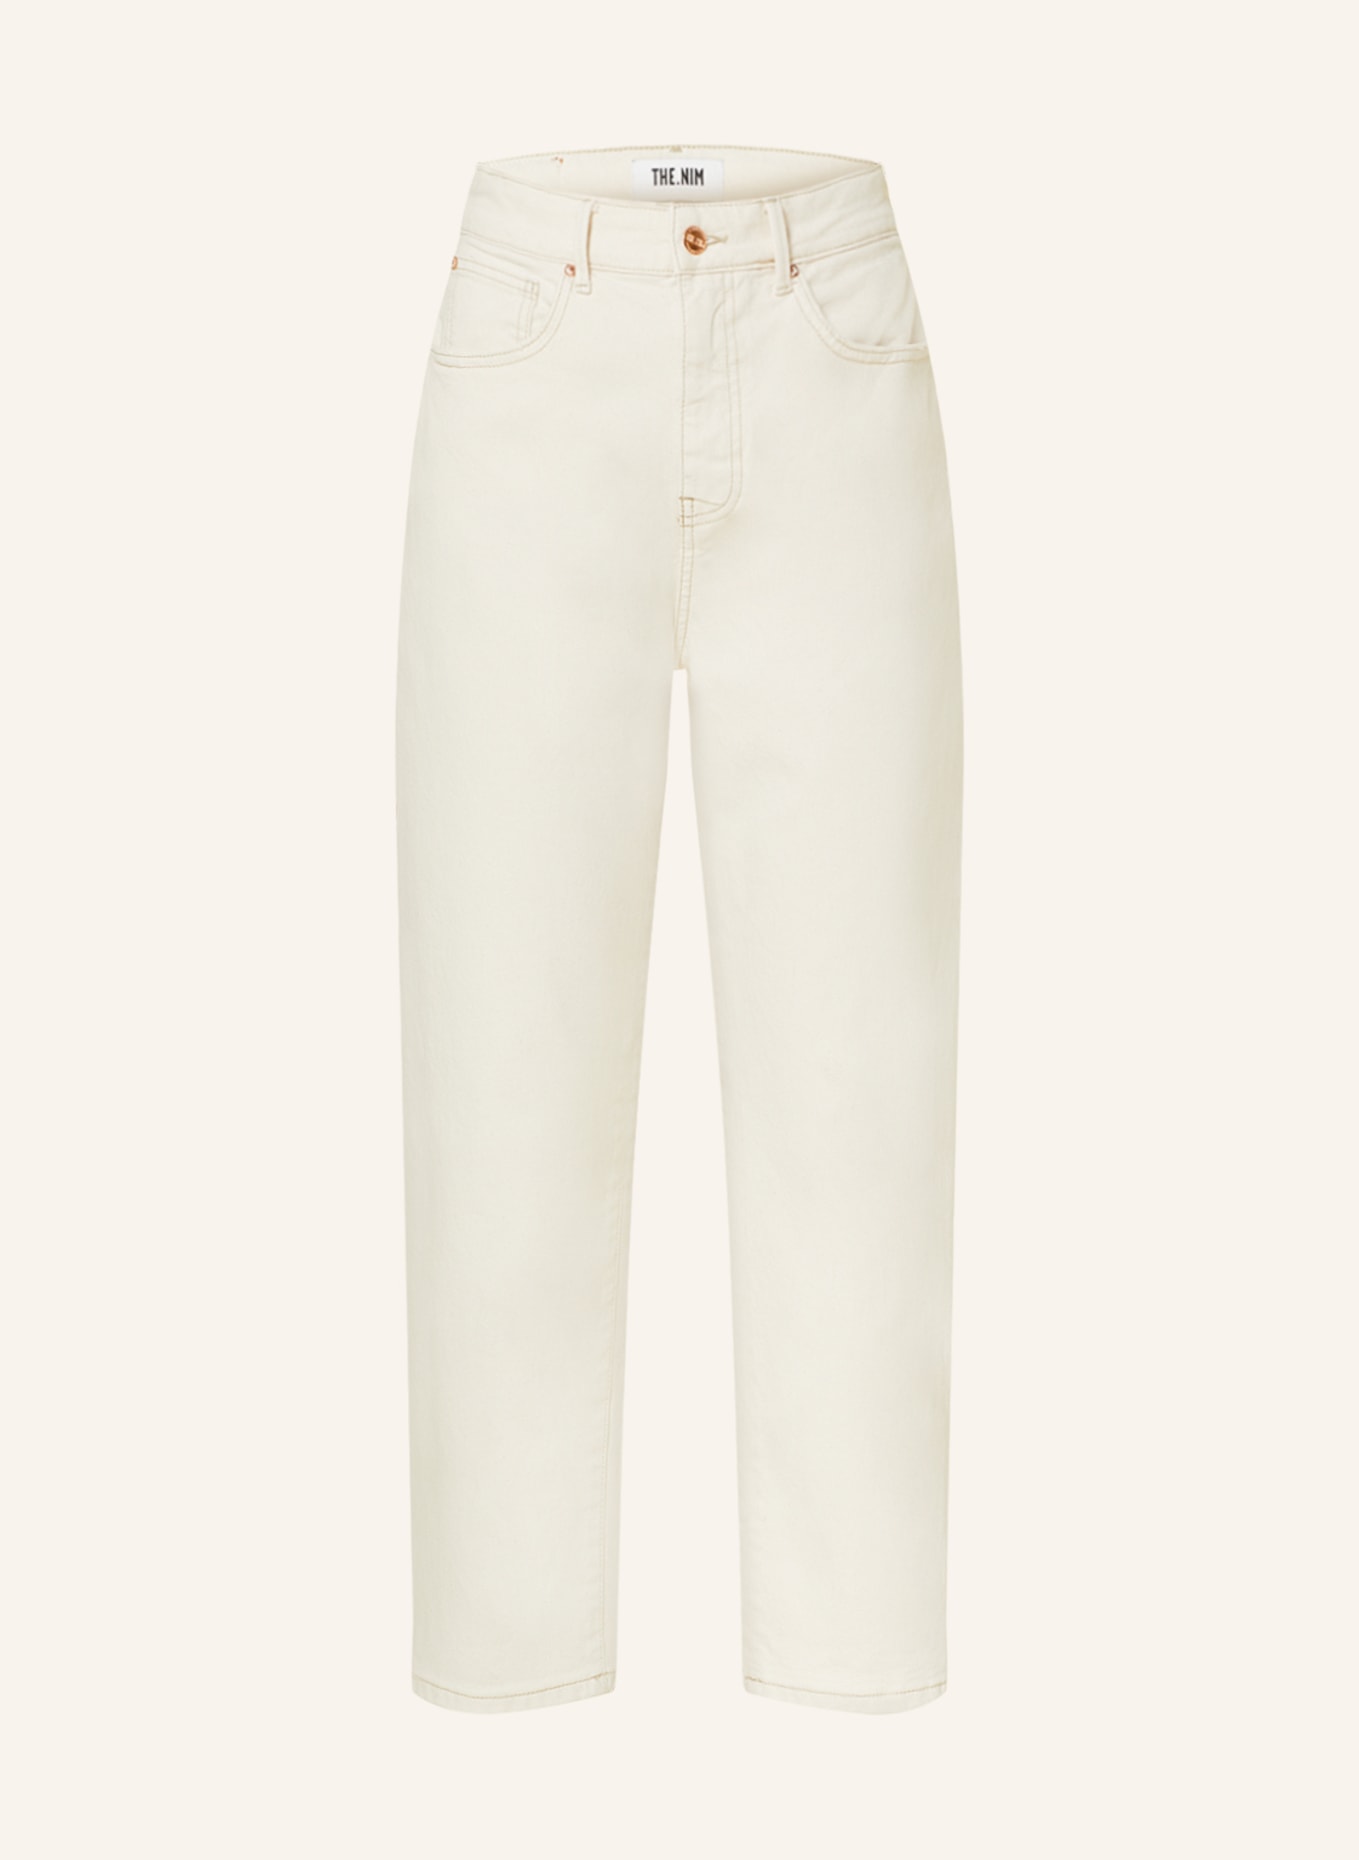 THE.NIM STANDARD Jeans COURTNEY, Farbe: W772-EKR ECRU (Bild 1)